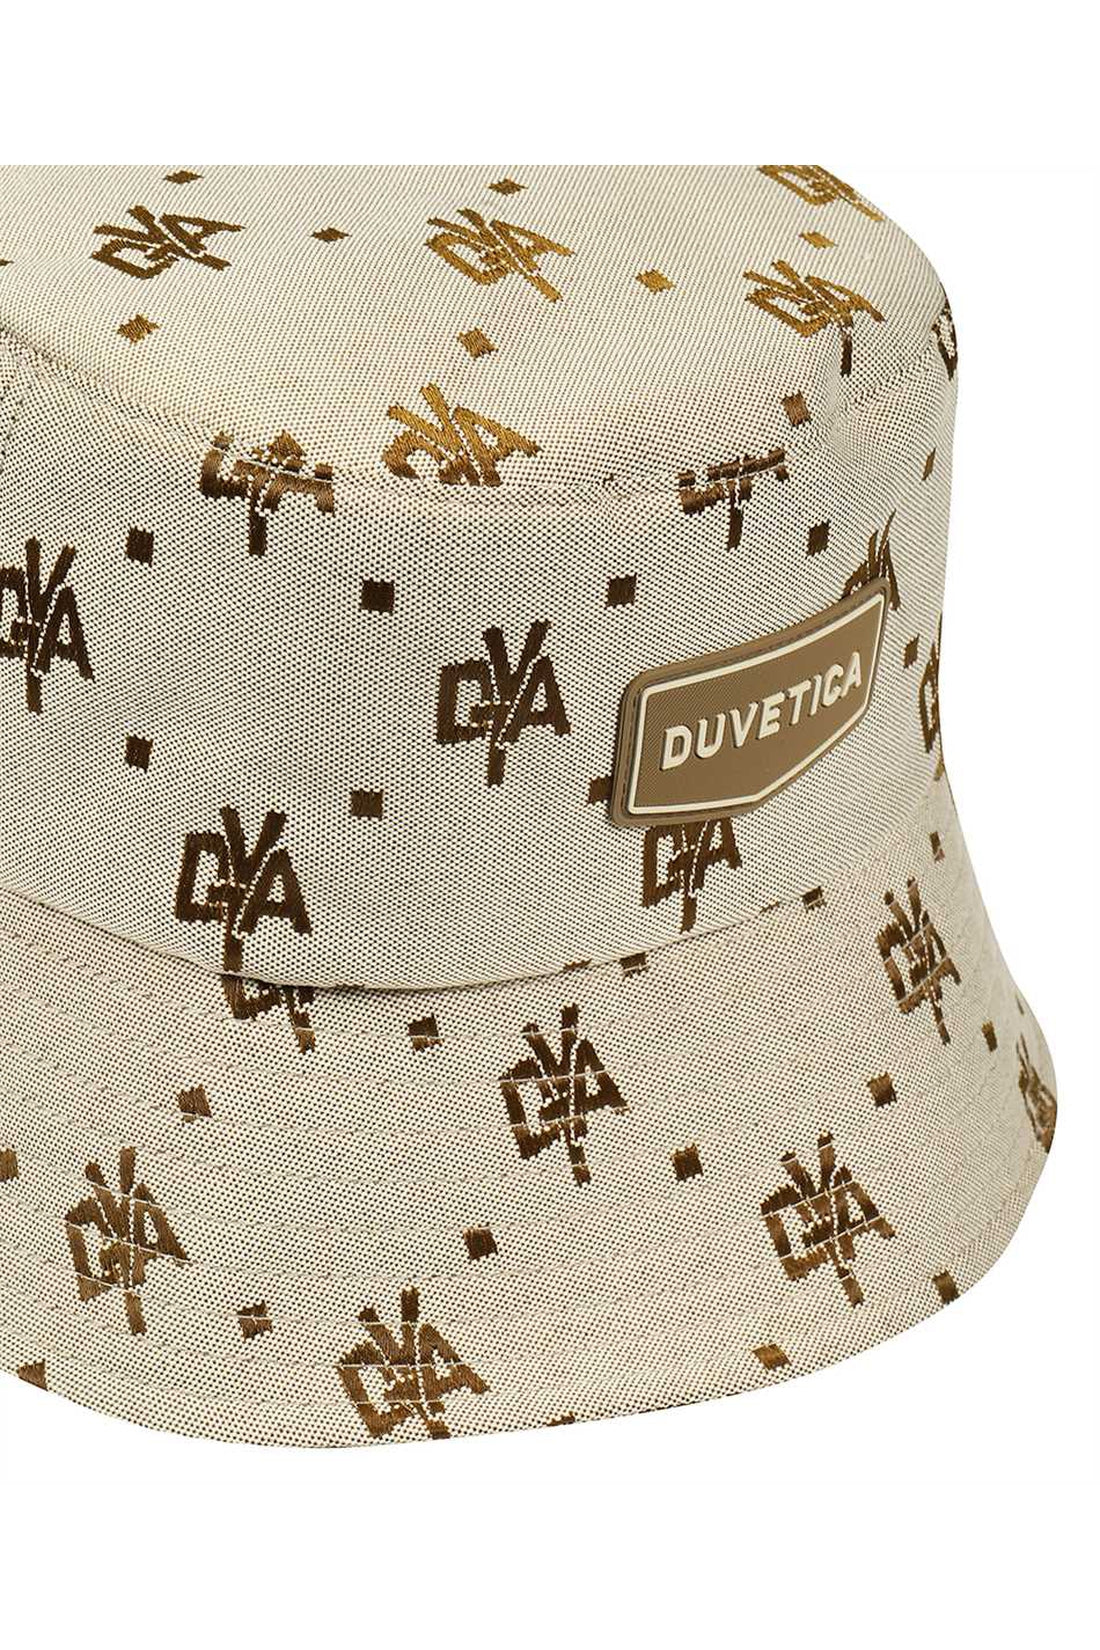 Duvetica-OUTLET-SALE-Solunto bucket hat-ARCHIVIST